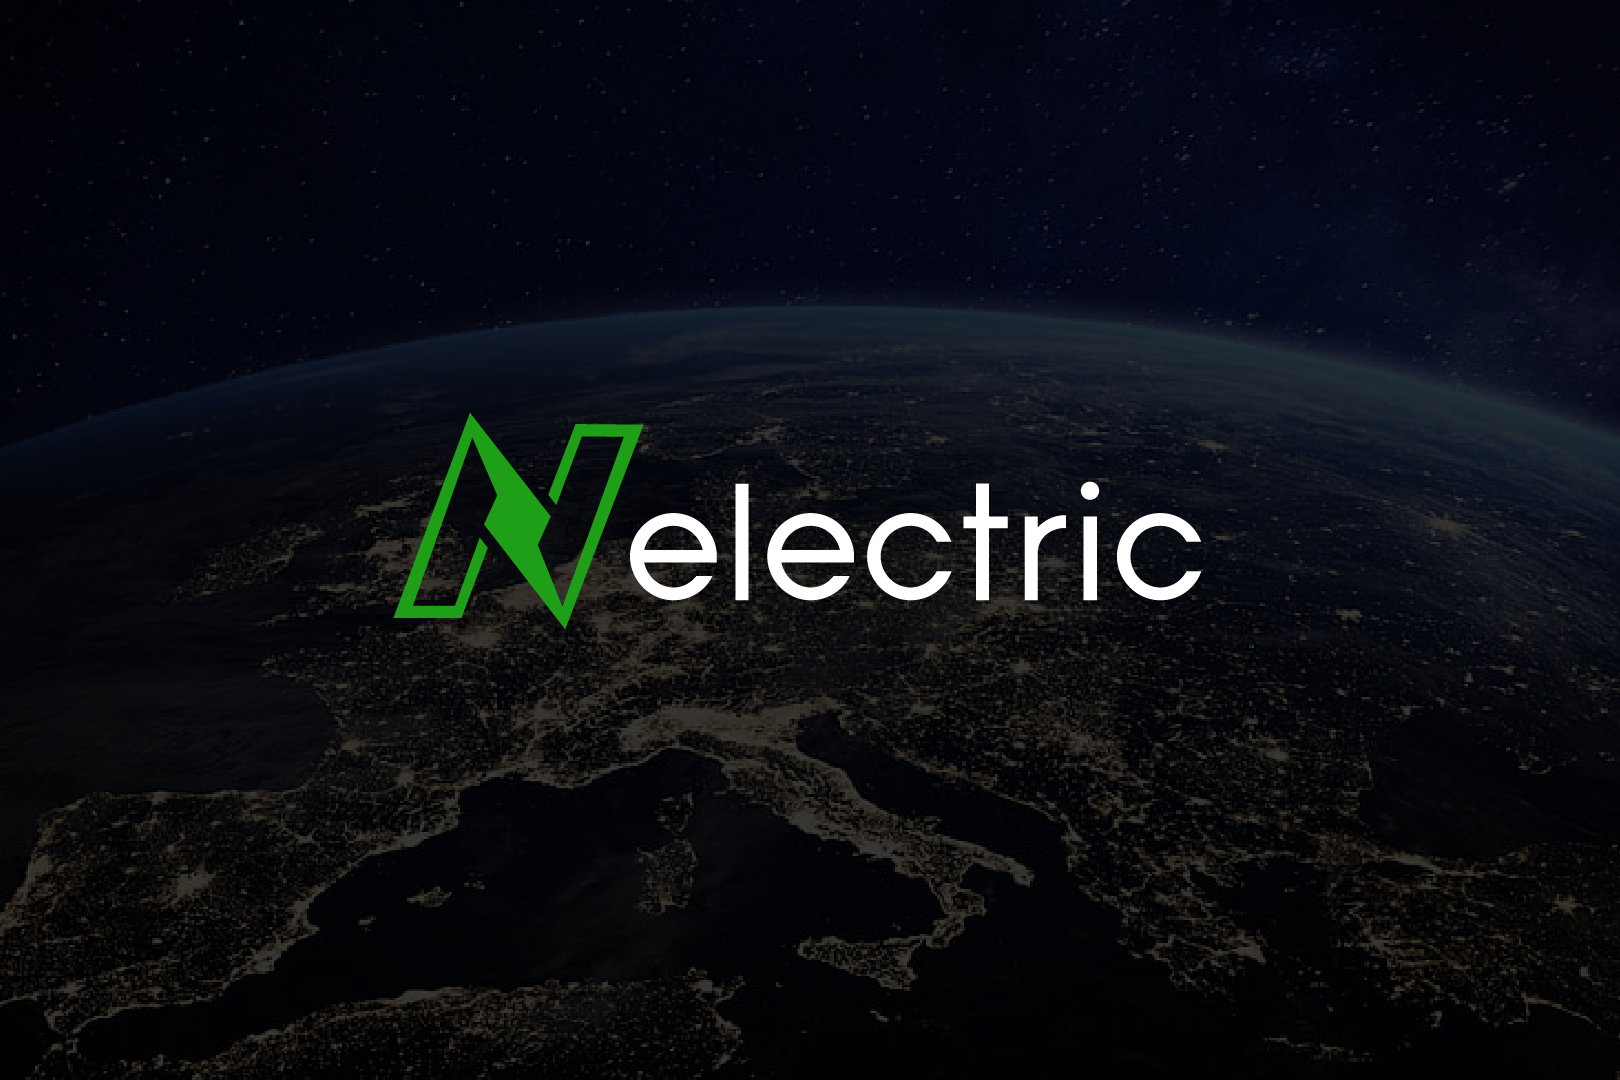 N Electric